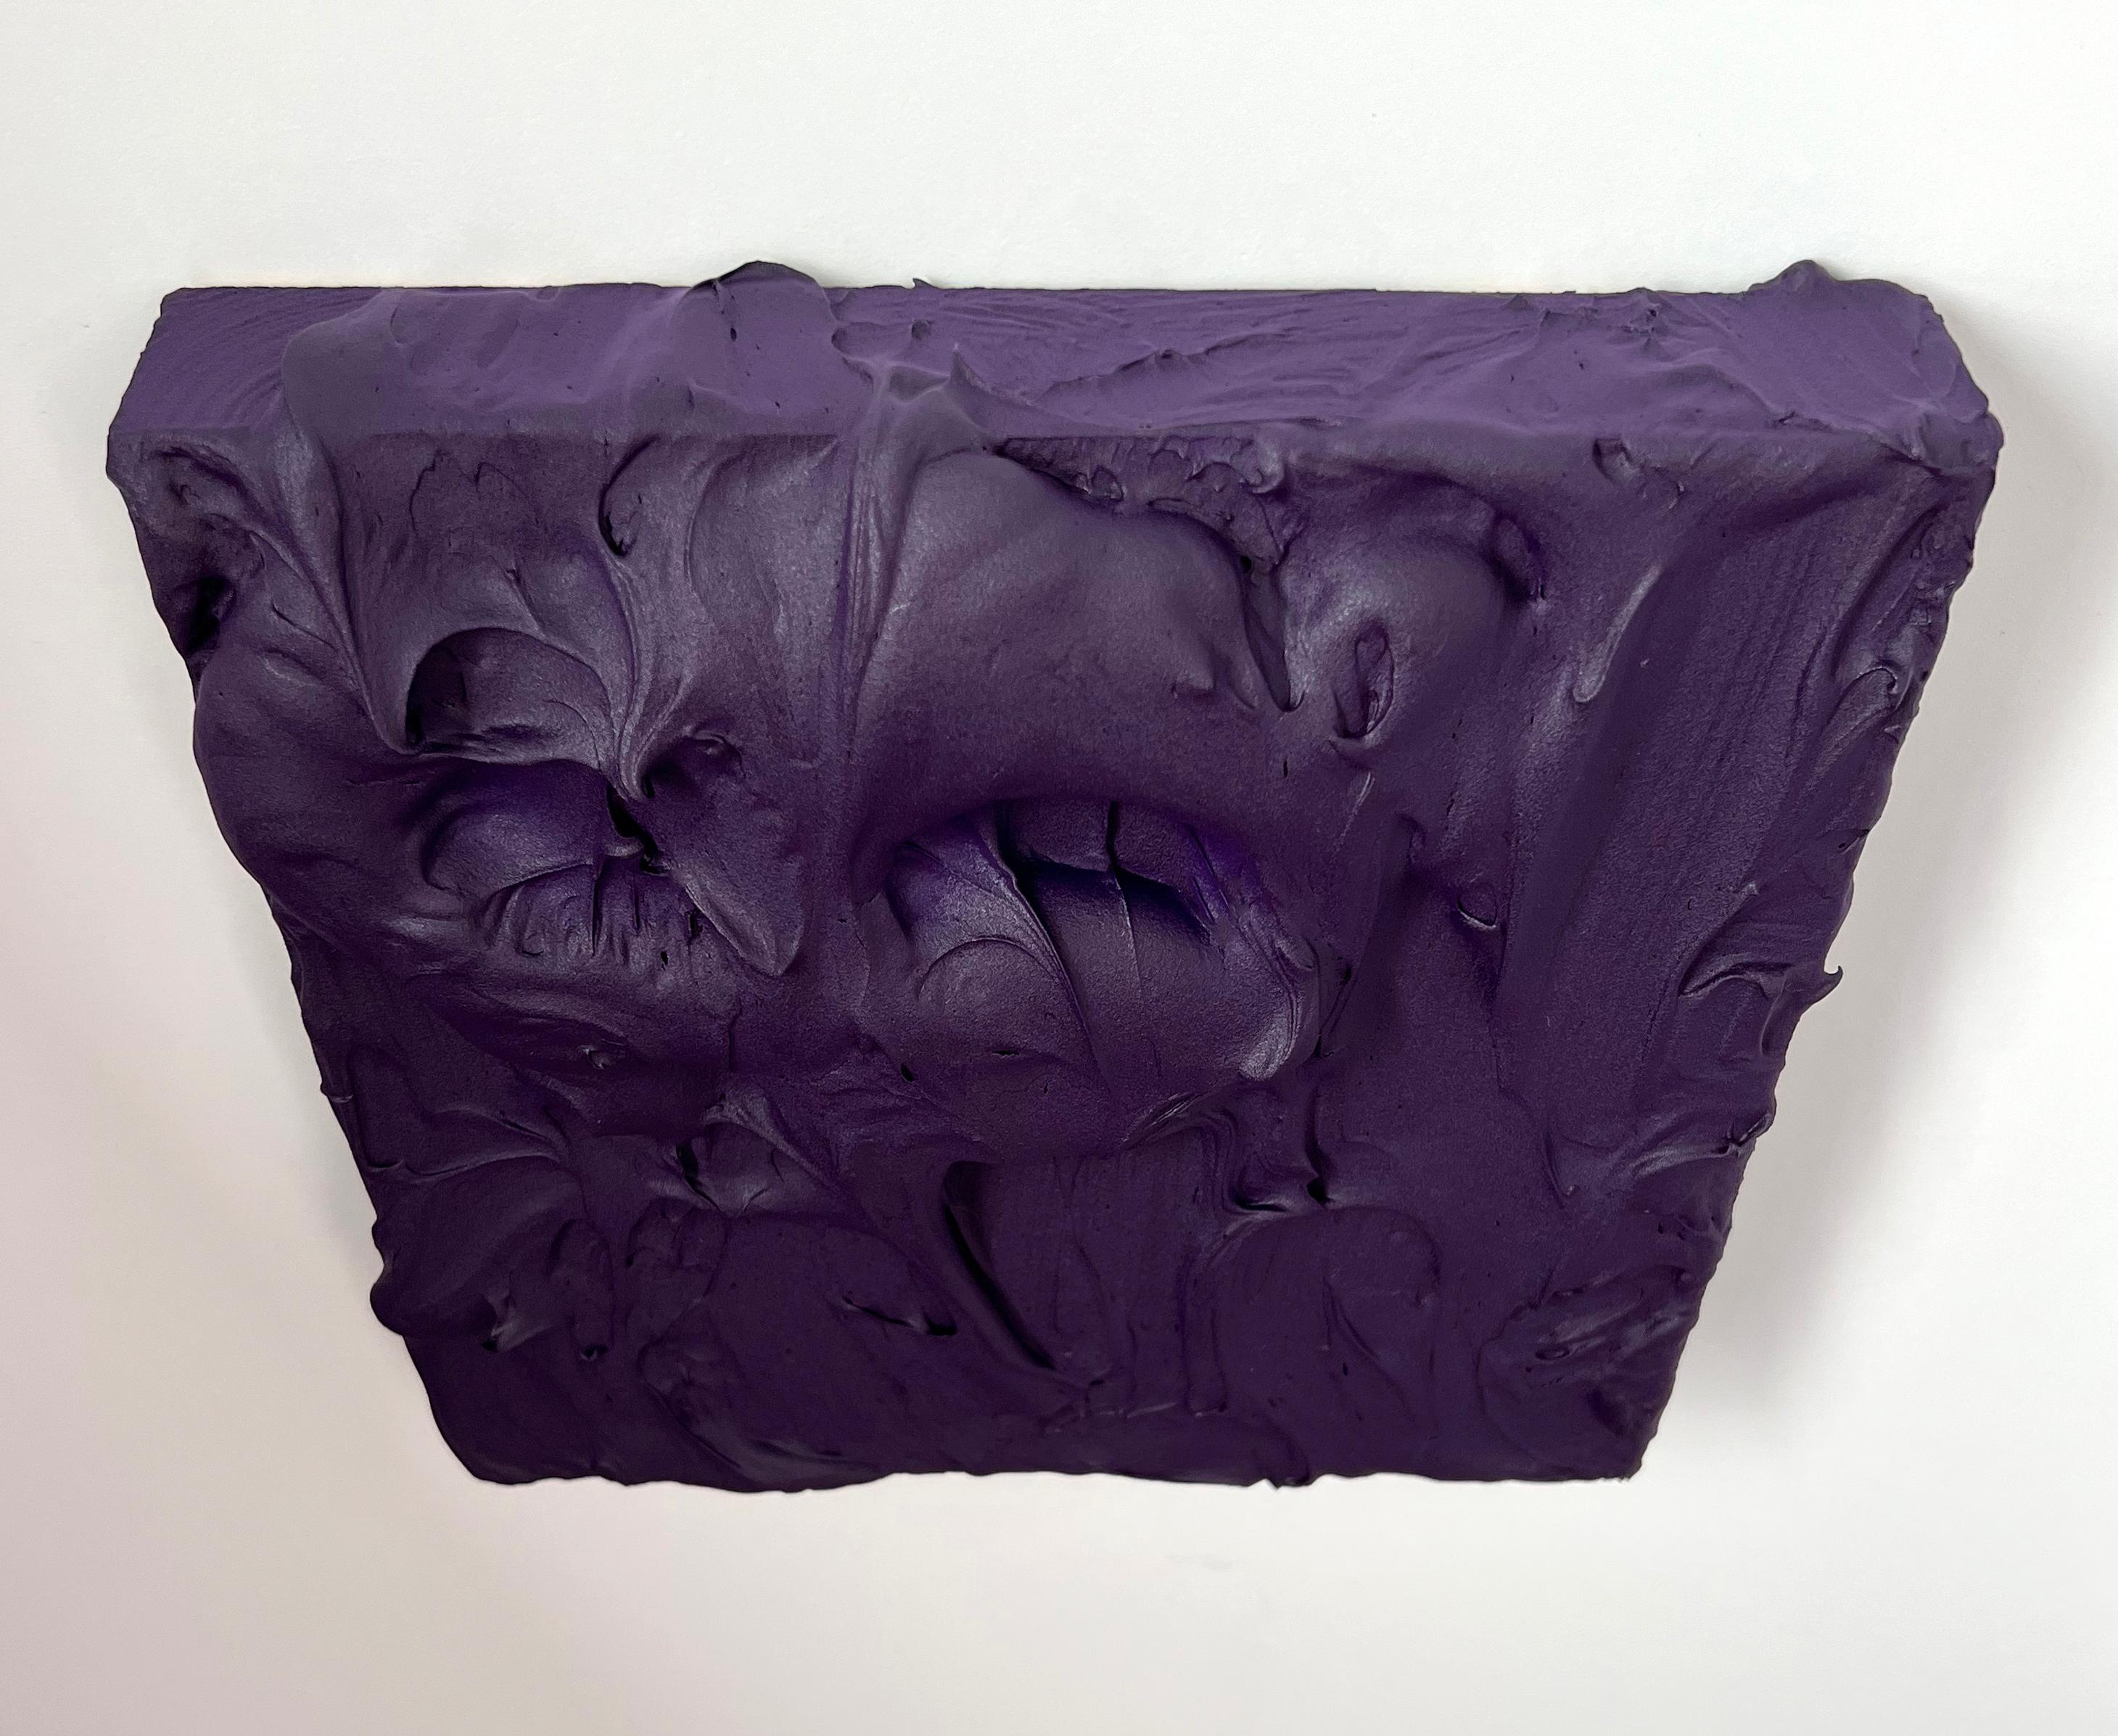 Royal Purple Excess (thick impasto painting monochrome Pop-Art quadratisches Design) – Sculpture von Chloe Hedden